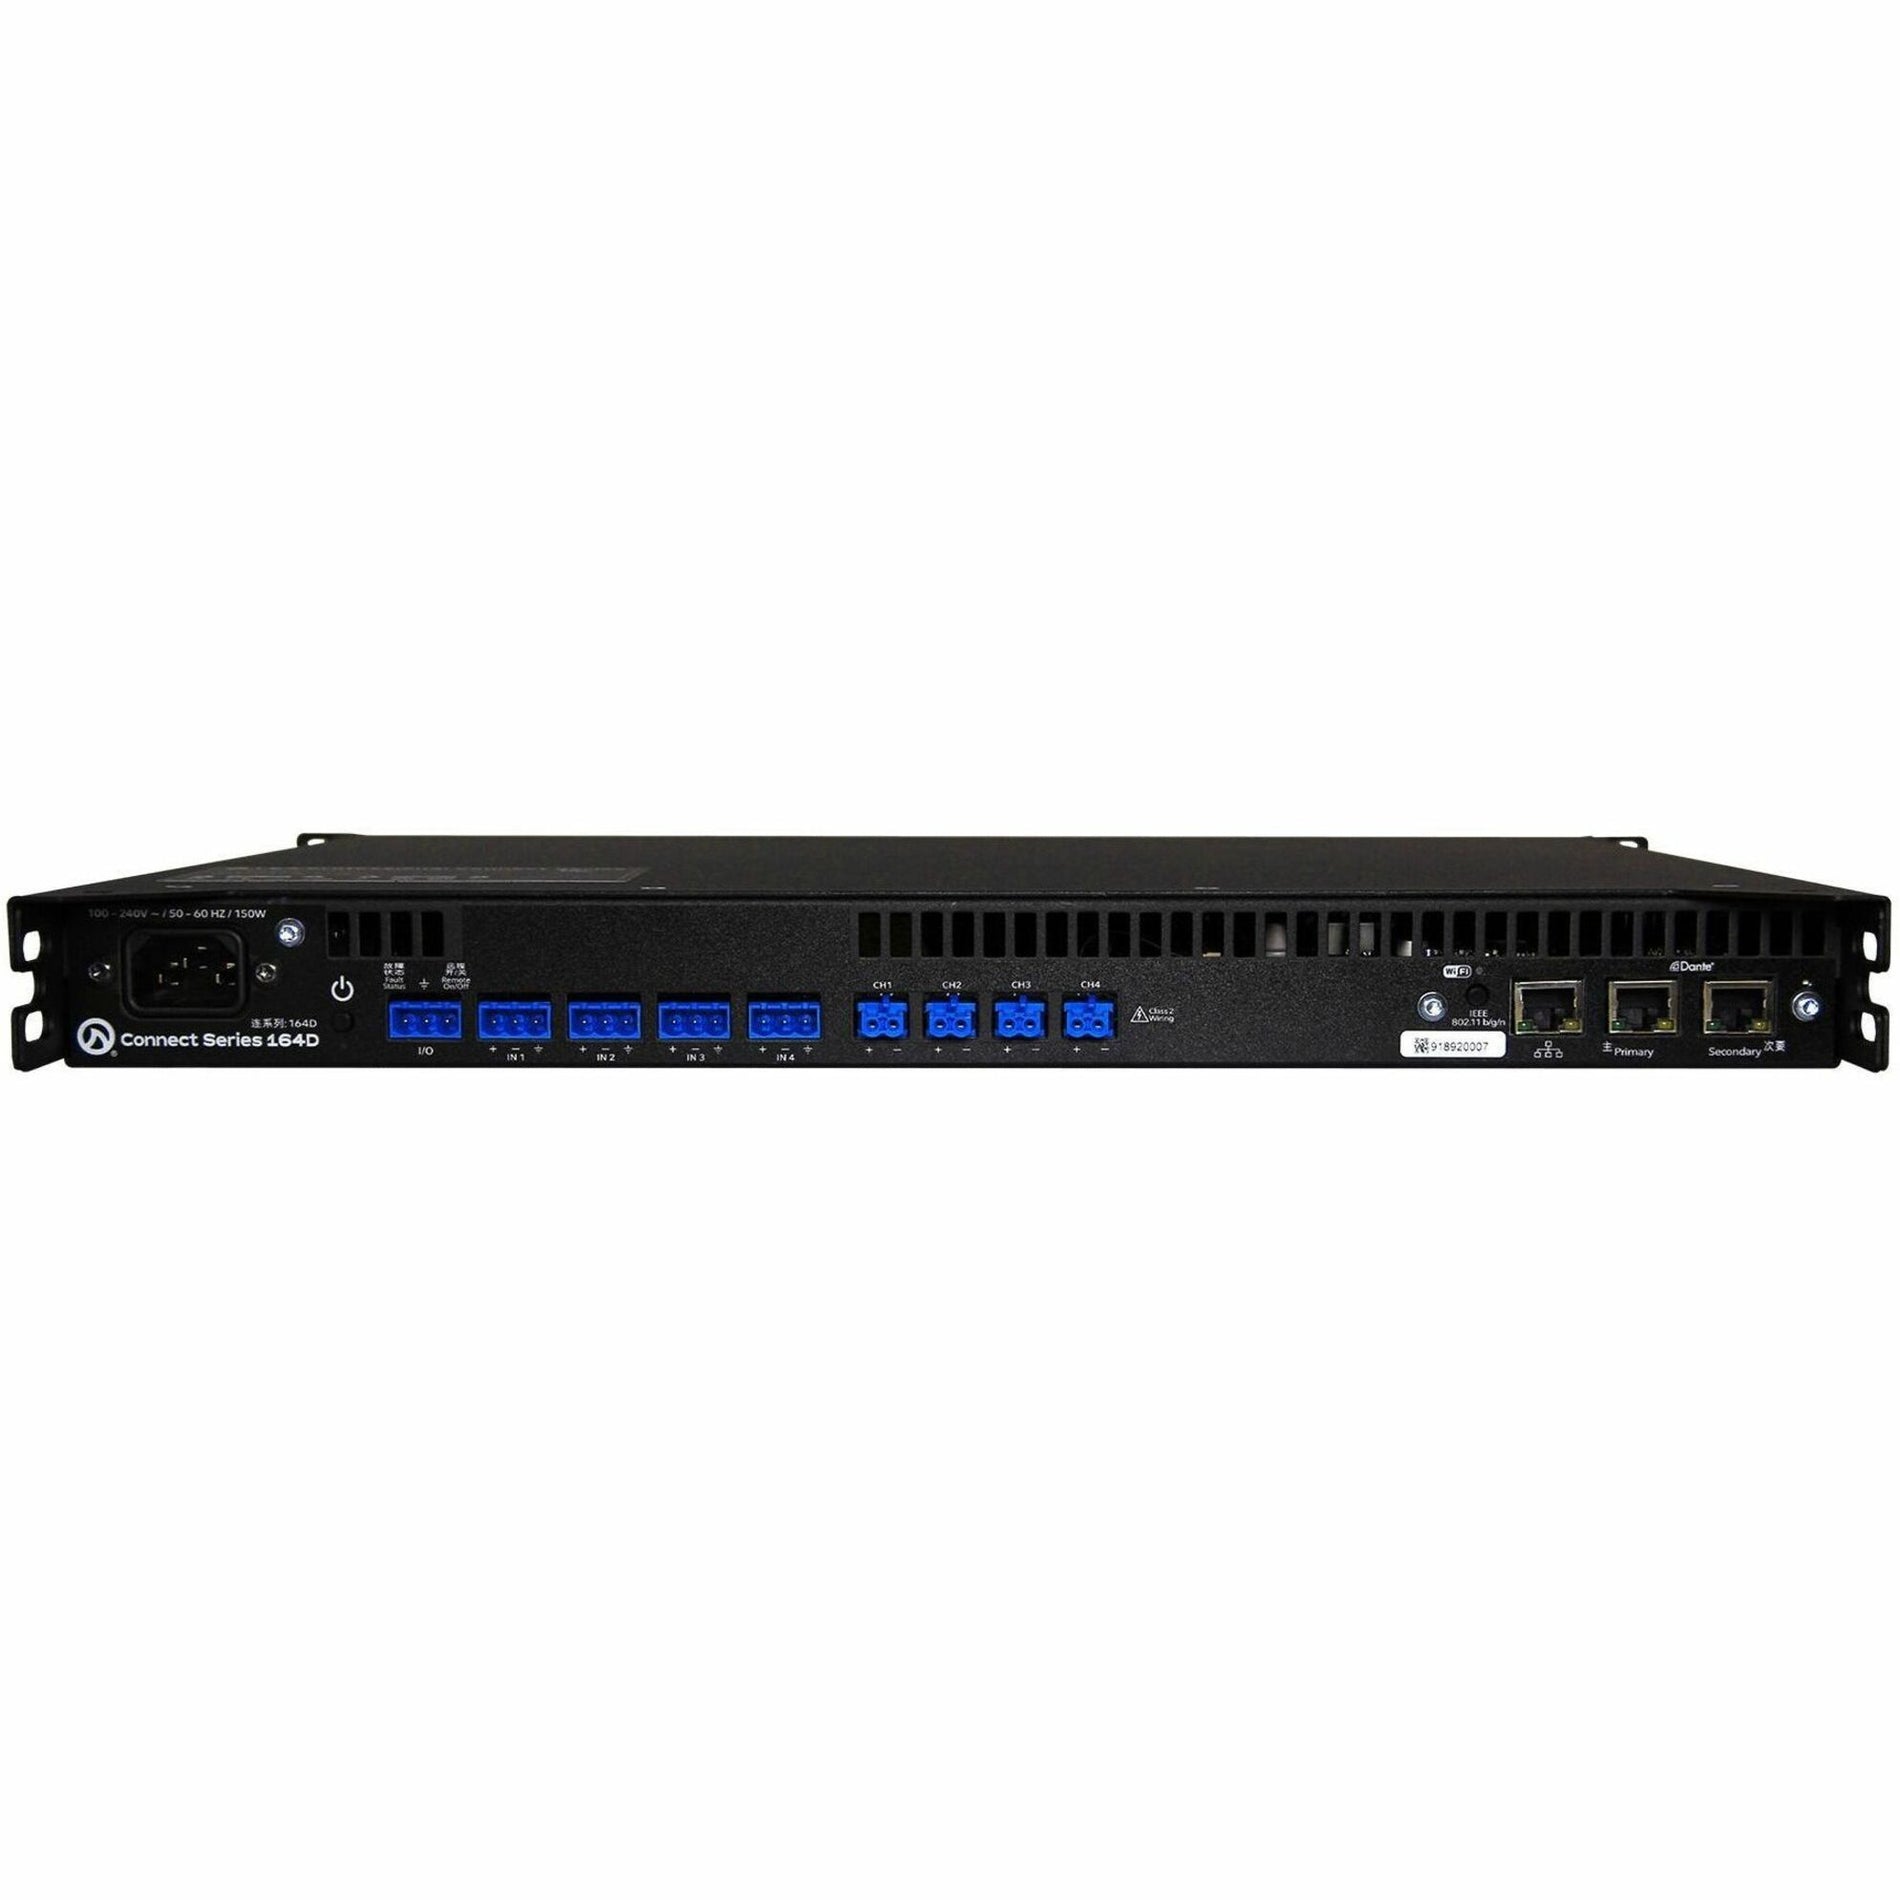 LEA Professional CONNECT 164D Amplifier - 640W RMS, 4 Channel, Rack Mount